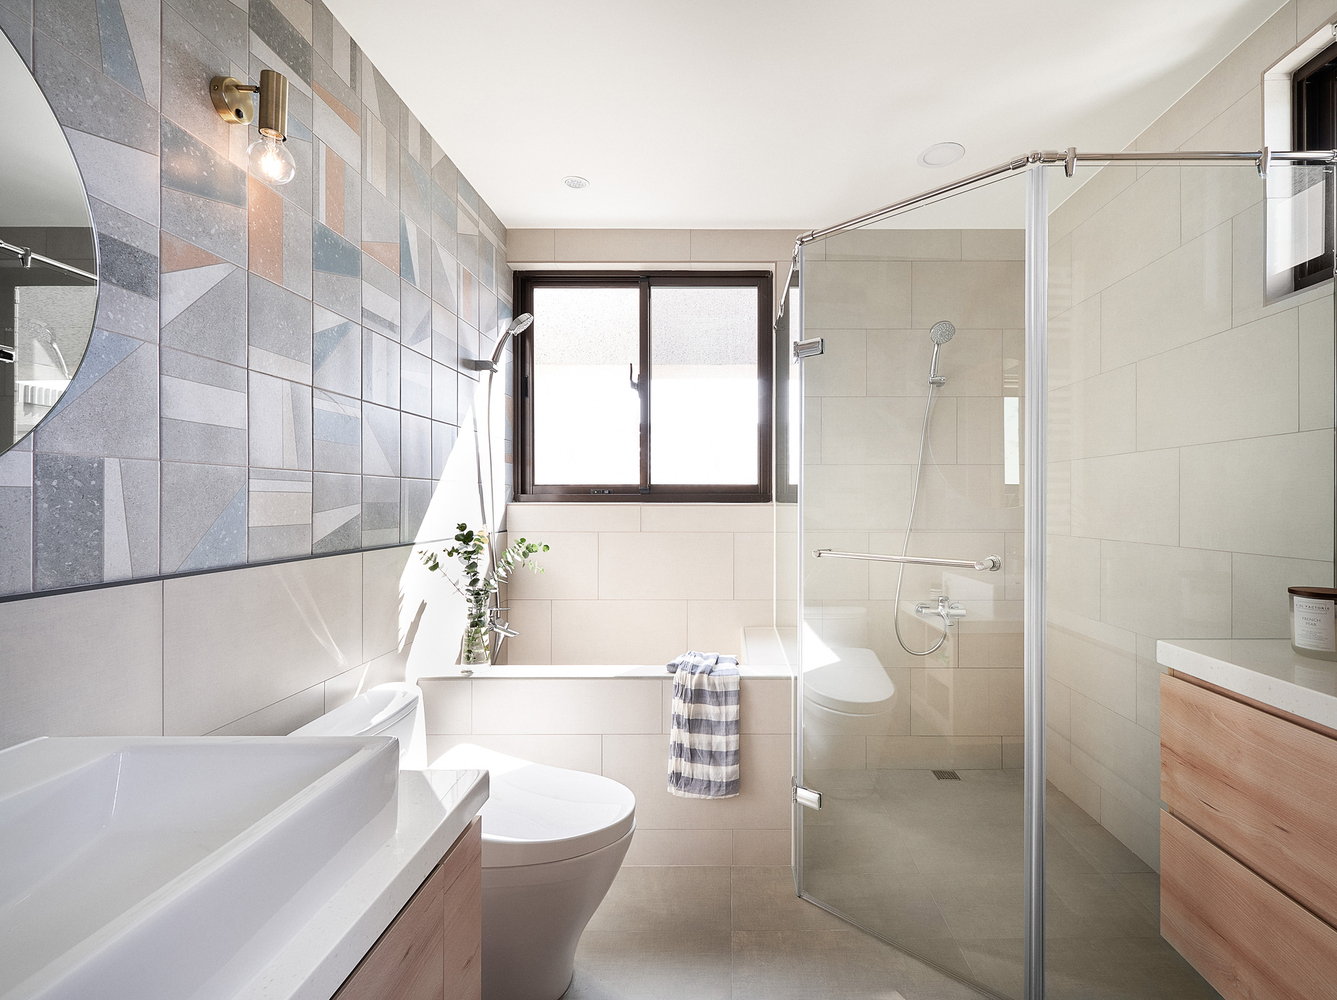 Hình ảnh toàn cảnh phòng tắm màu trắng chủ đạo với buồng tắm đứng phân tách bởi vách kính trong suốt